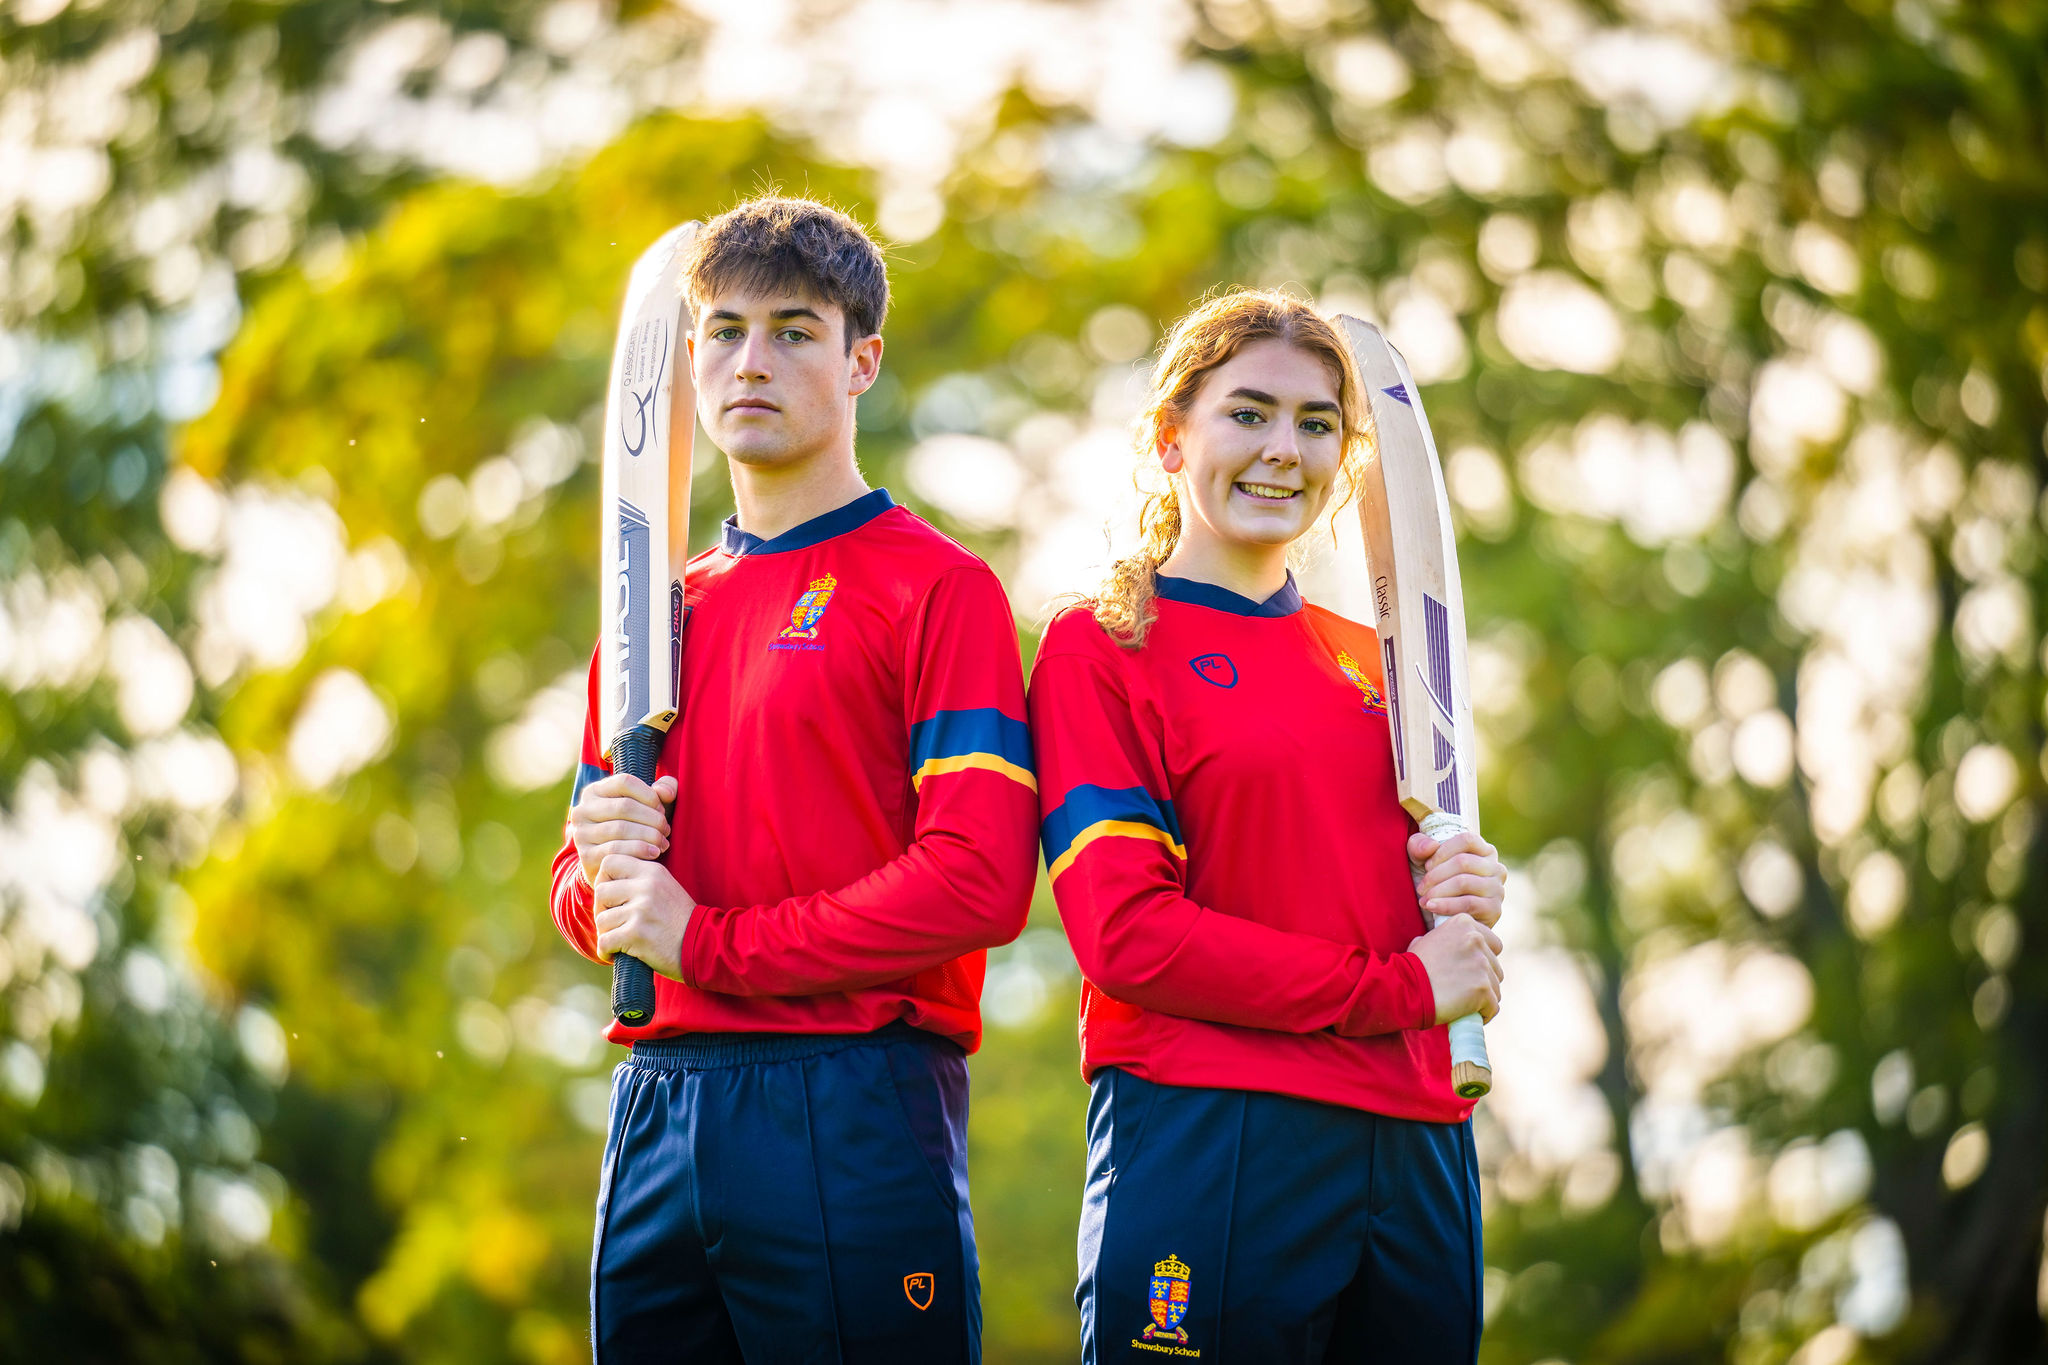 Shrewsbury School named in the Top 100 of UK's best schools for Cricket